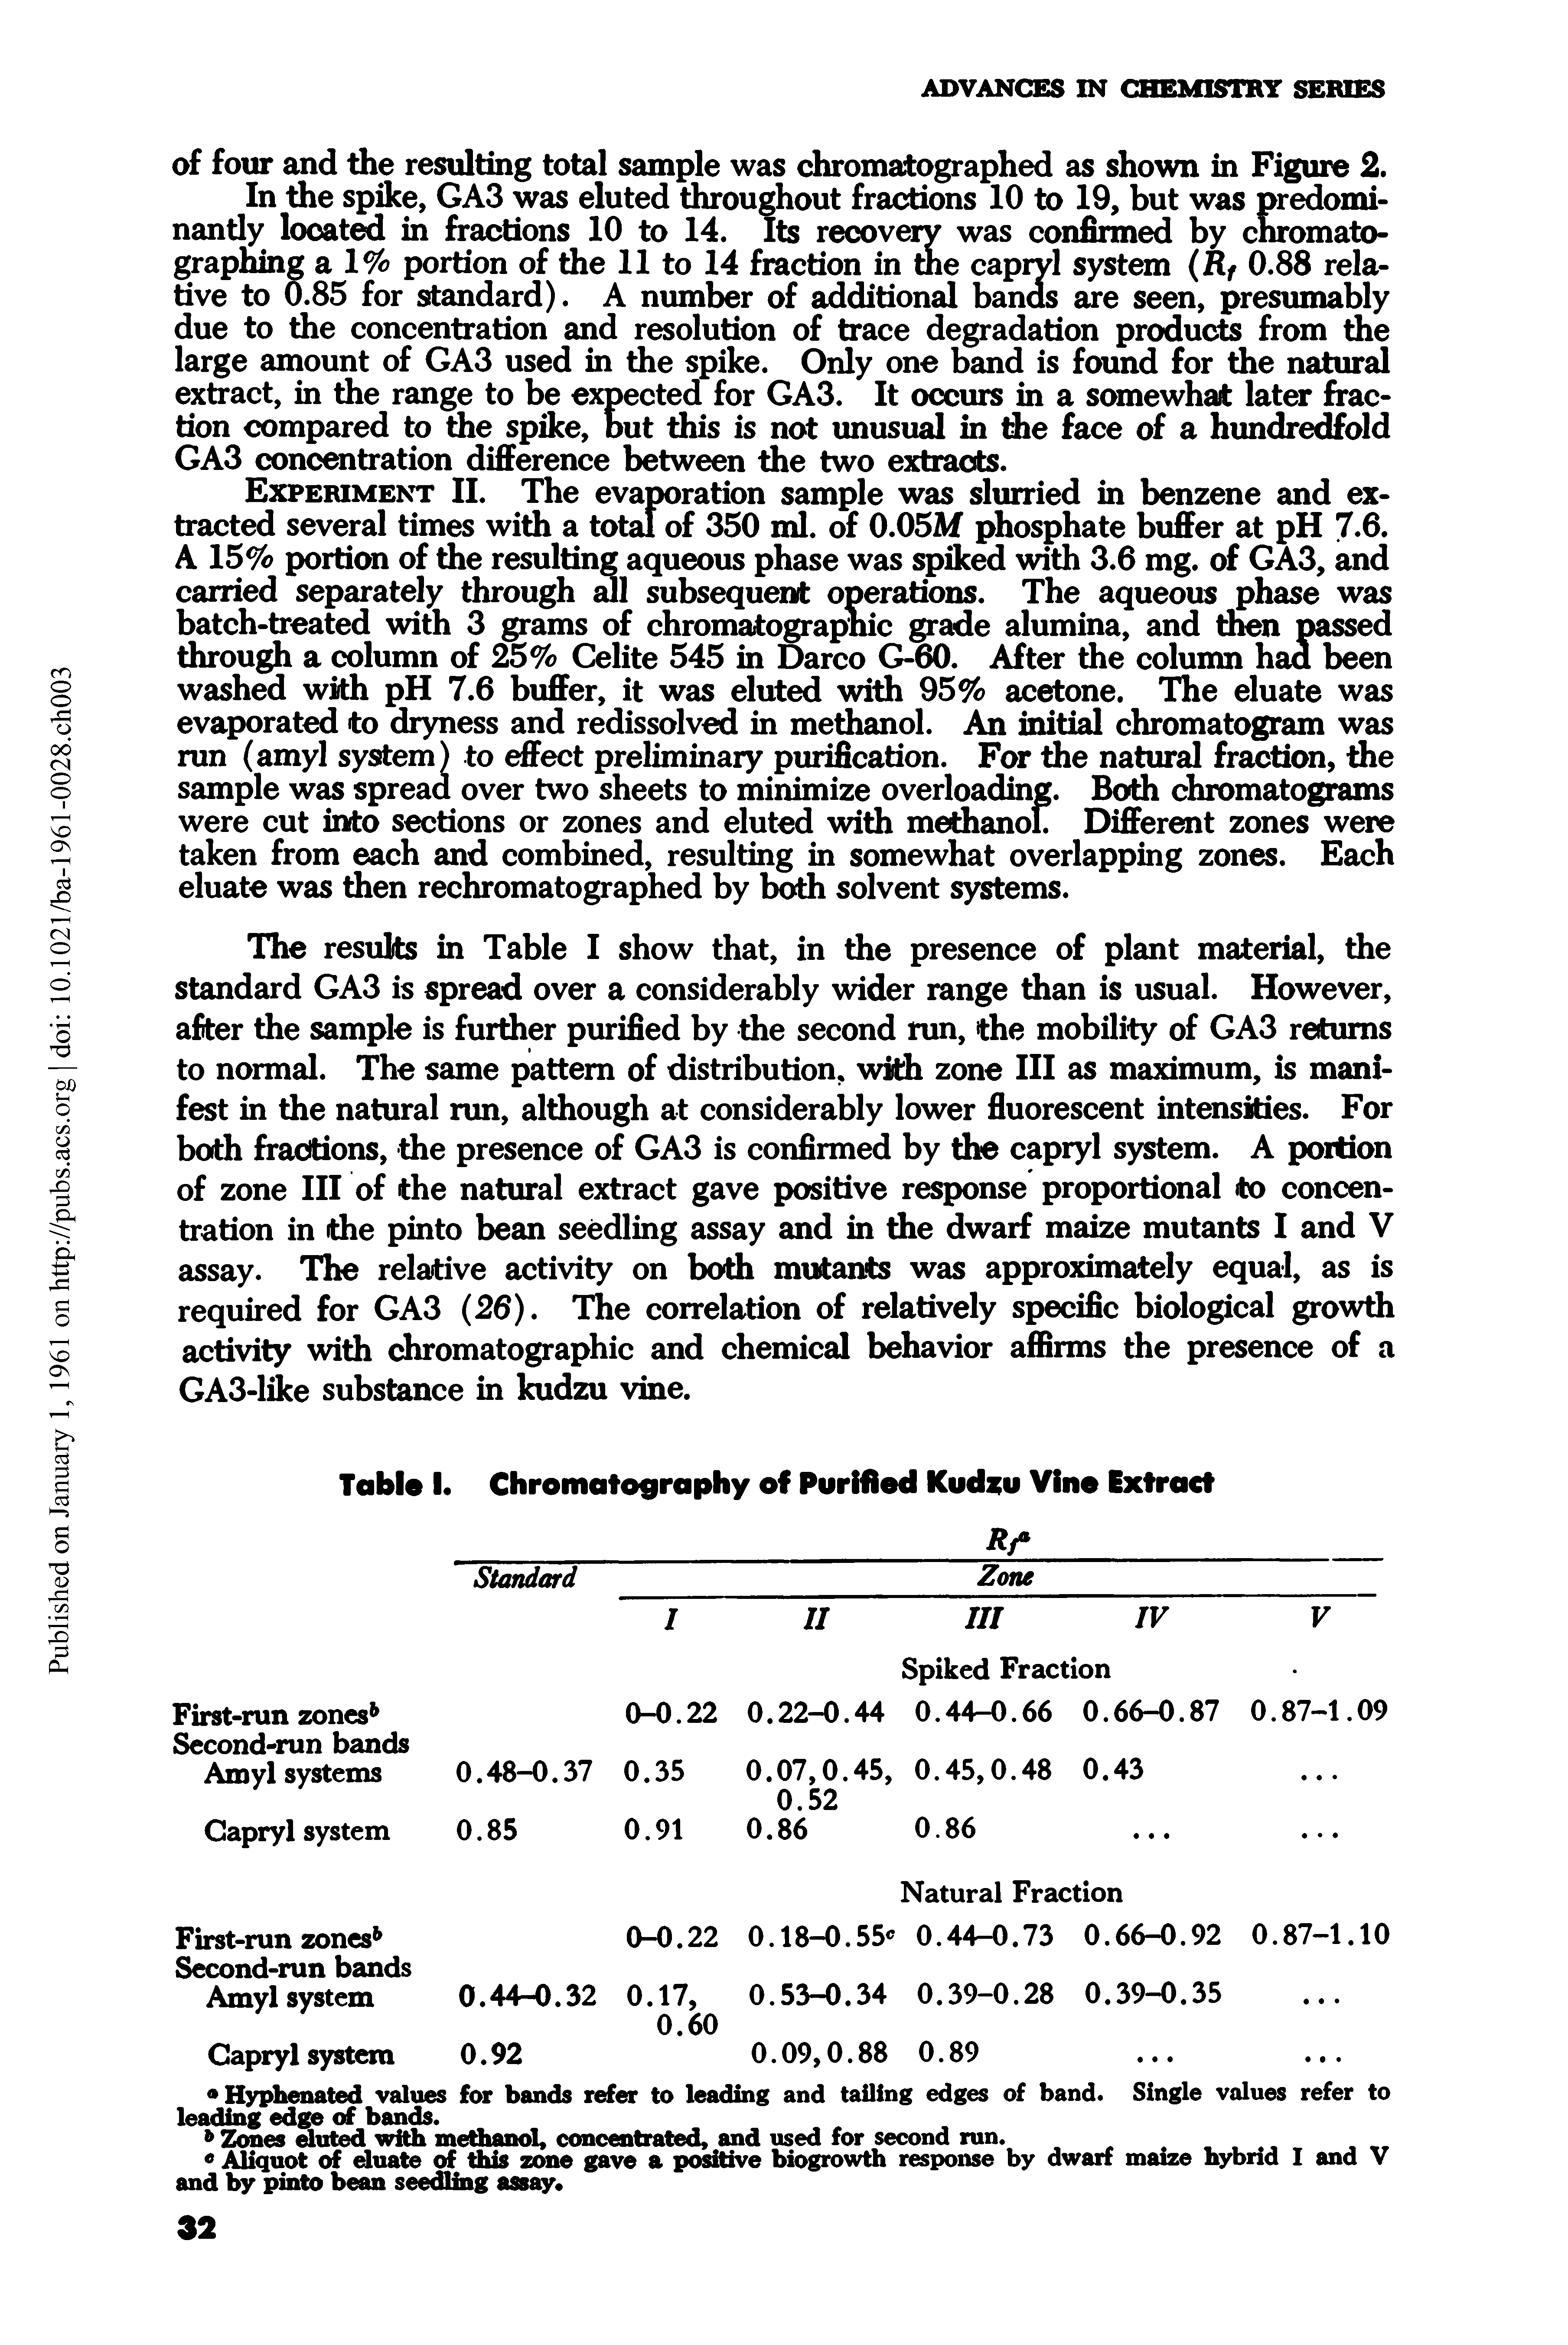 Table I. Chromatography of Purified Kudzu Vine Extract...